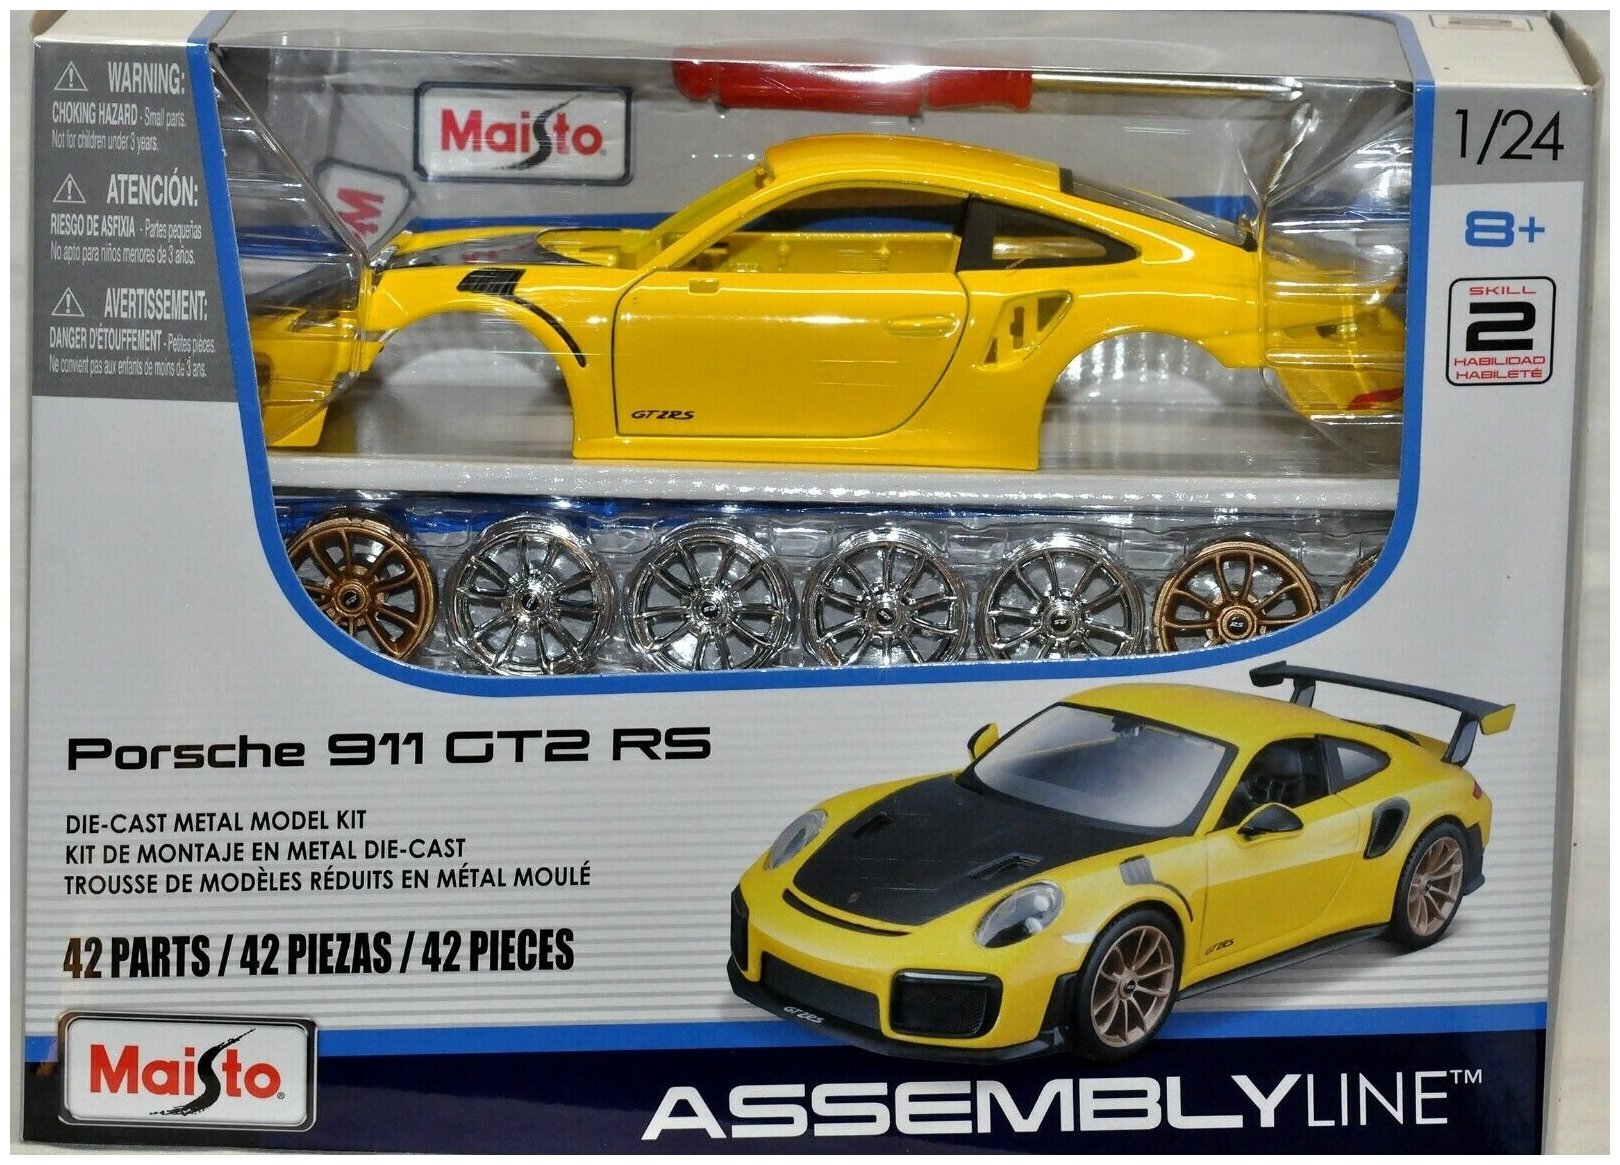 Машинка сборная металлическая Maisto KIT 1:24 Porsche 911 GT2 R5 39523